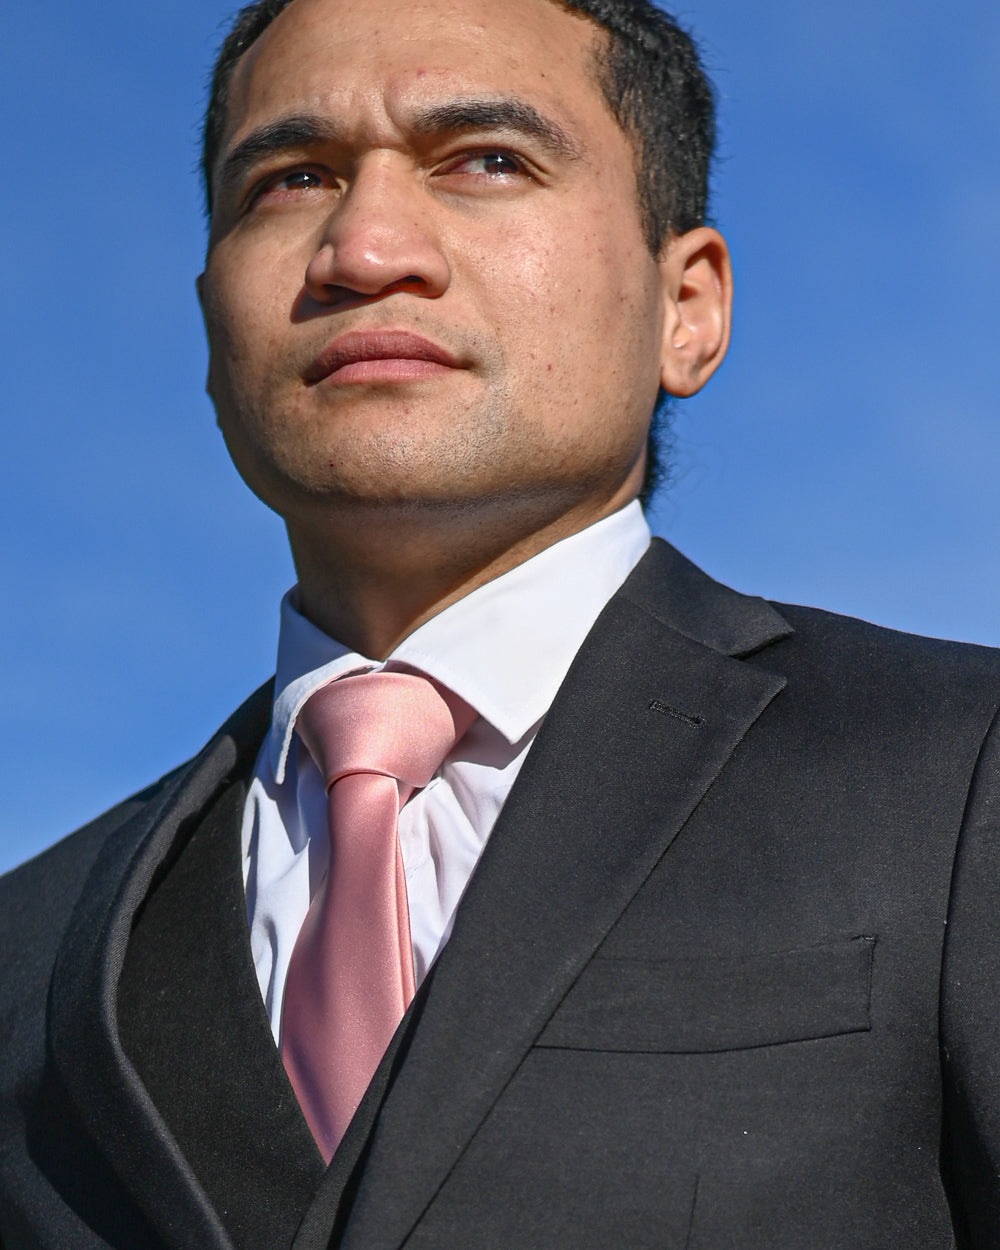 Dark pink silk-look tie worn with a black three-piece suit